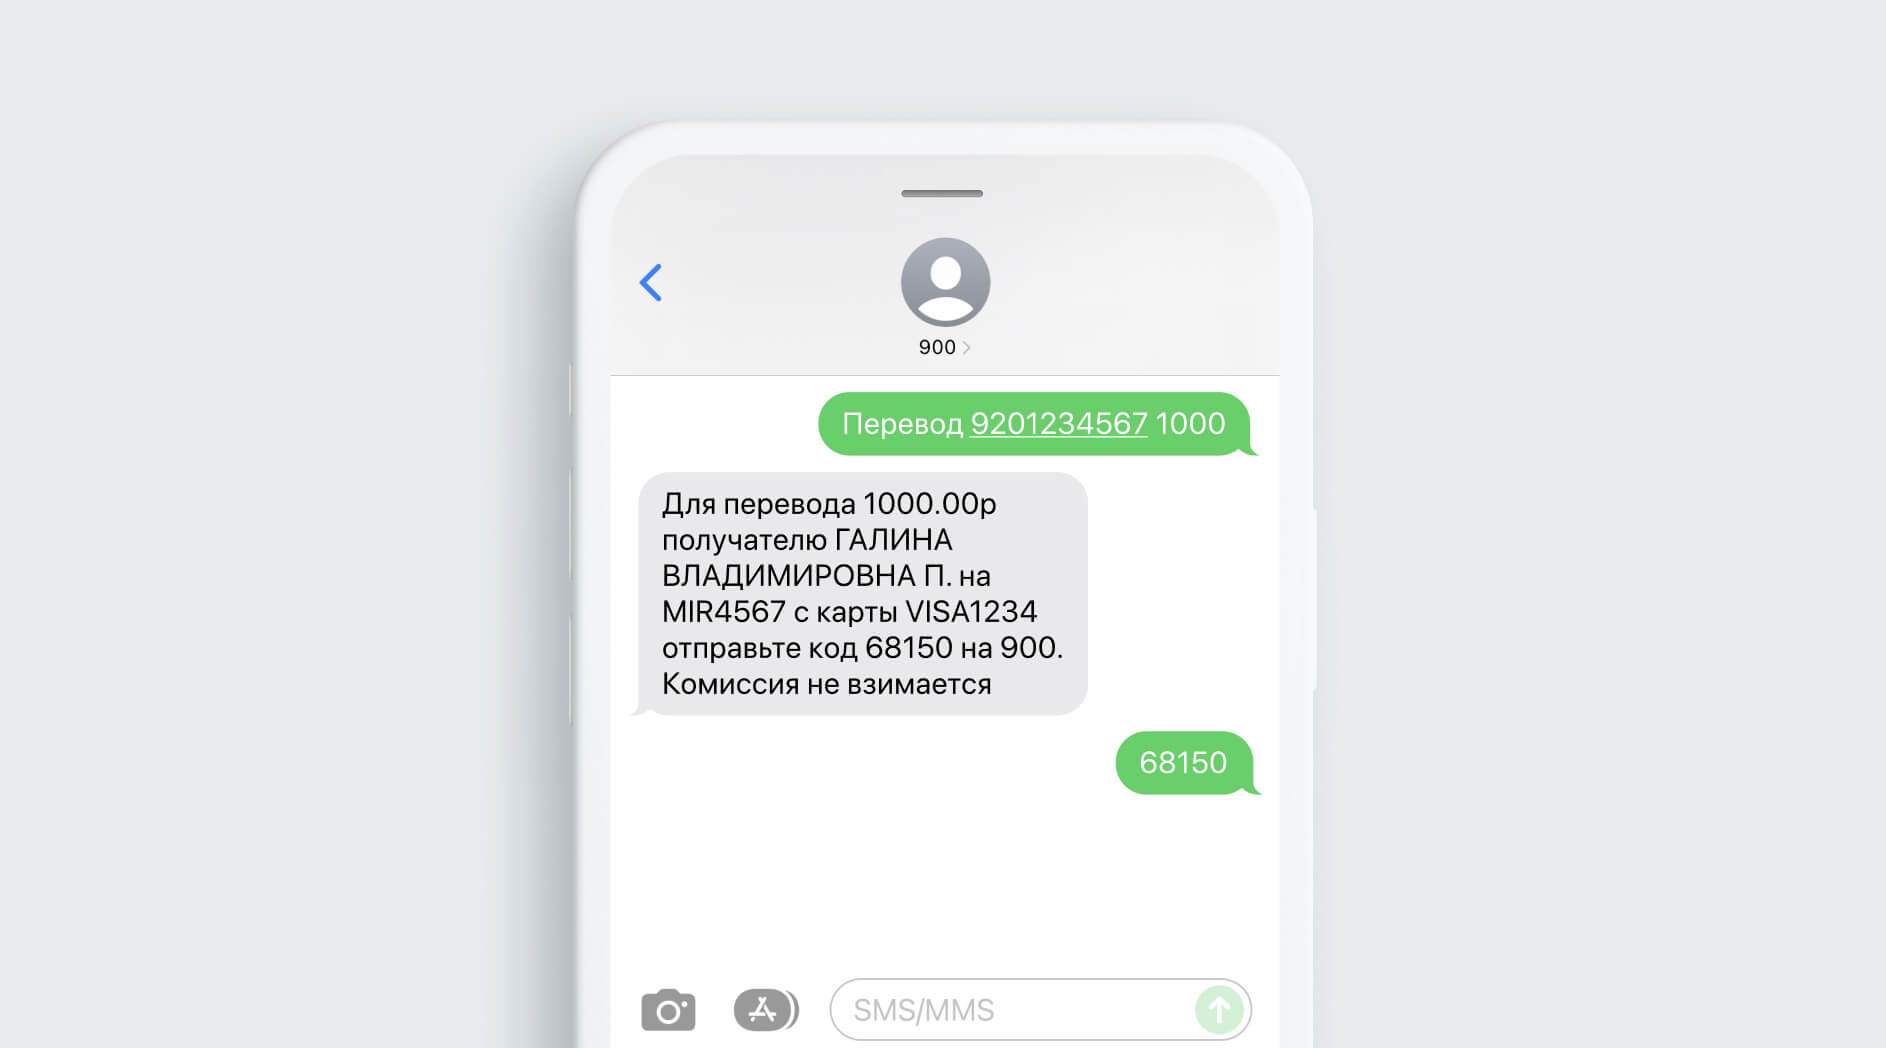 Сбербанк СМС-команды на номер 900